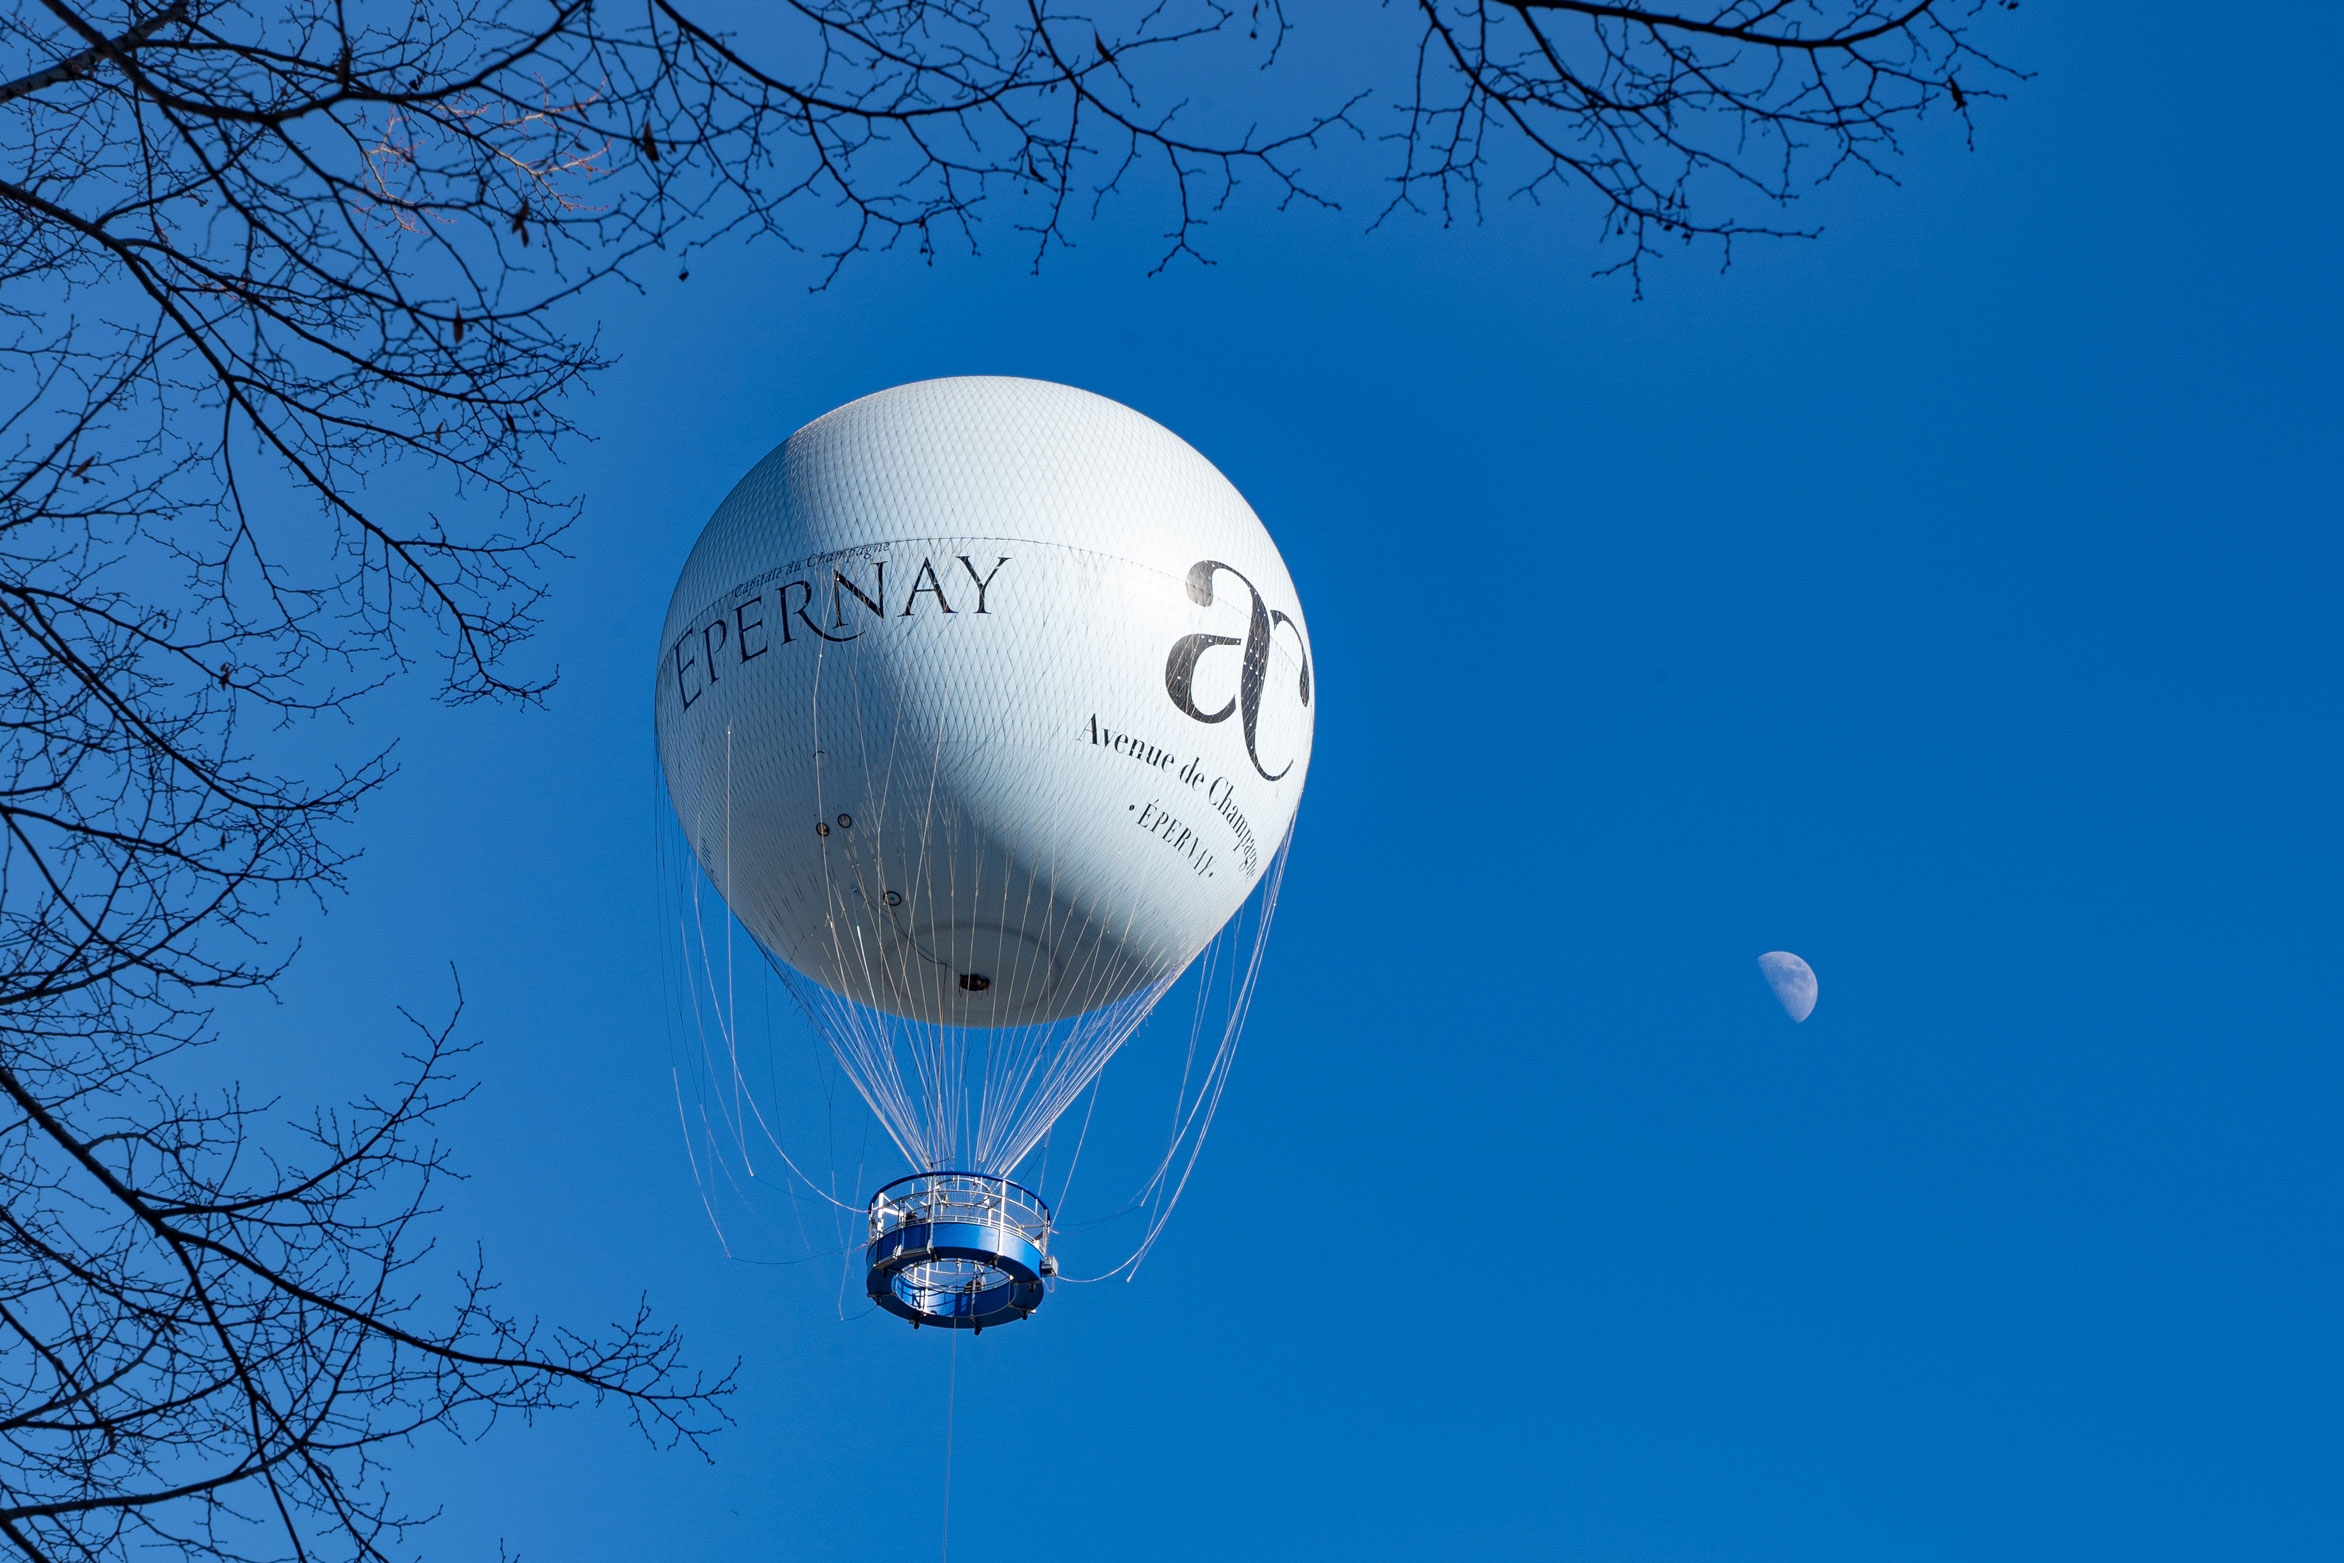 Le ballon captif d’Epernay pour admirer ville et vignes d’en haut - @ Ville d’Epernay